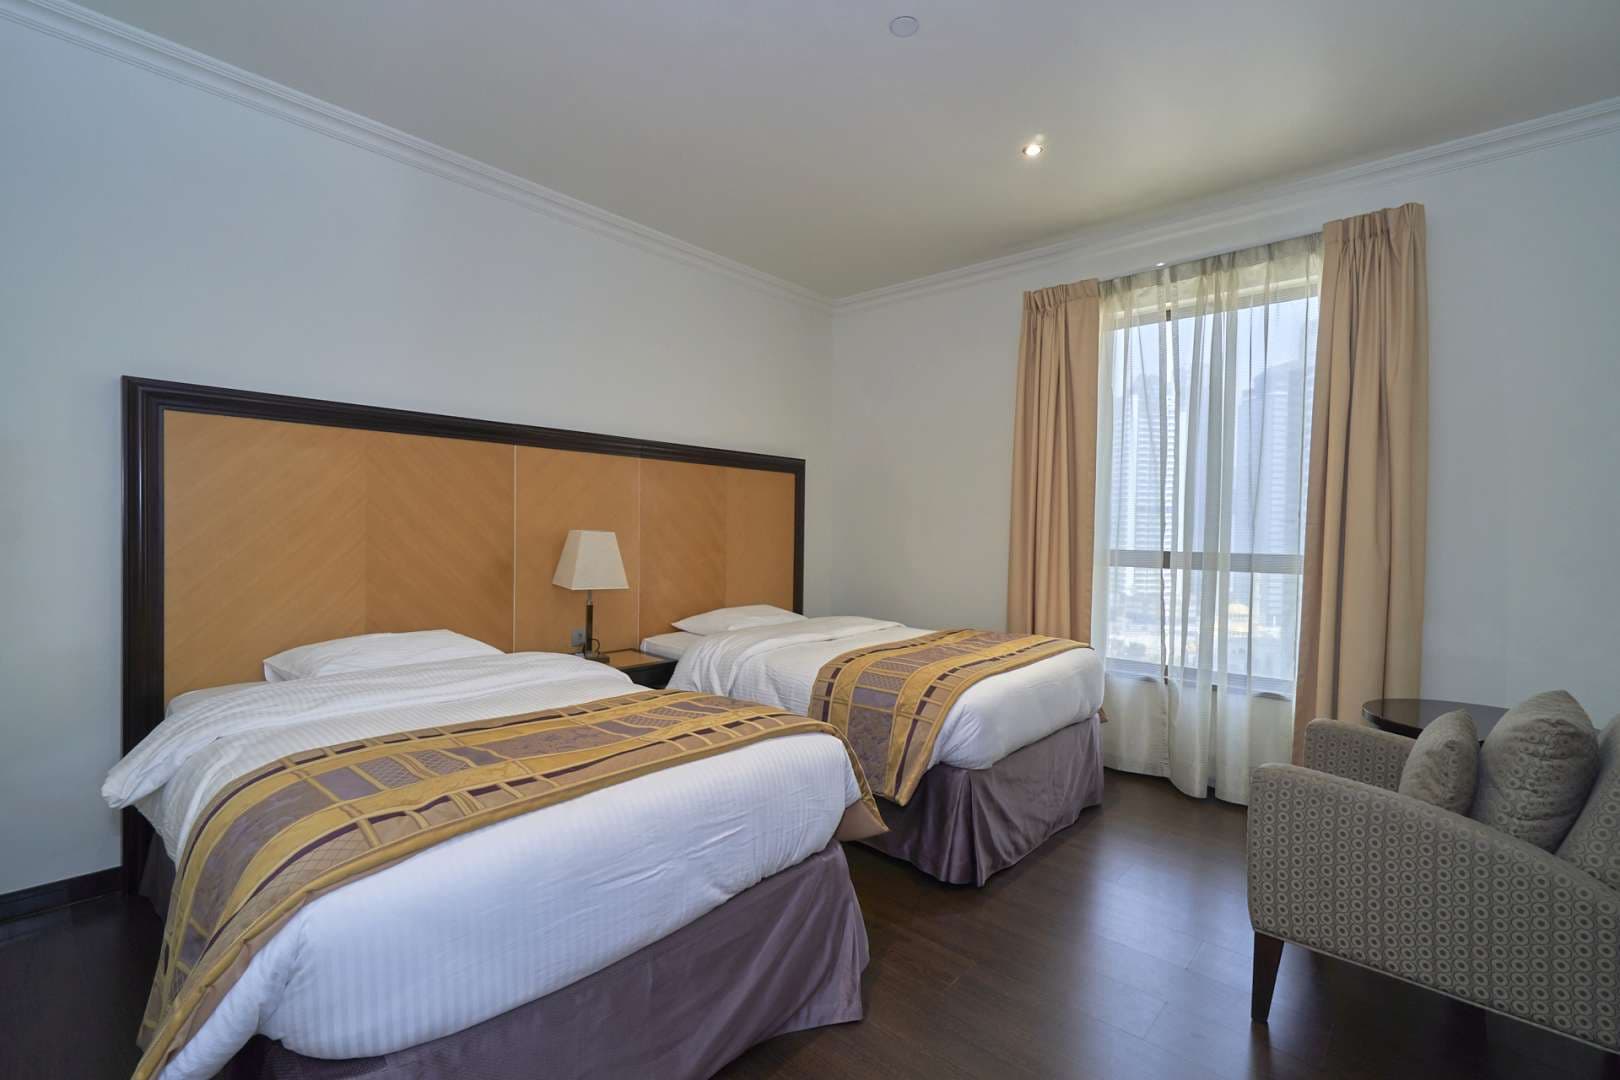 3 Bedroom Apartment For Rent Murjan Lp08238 1f6d00a1ccb86700.jpg